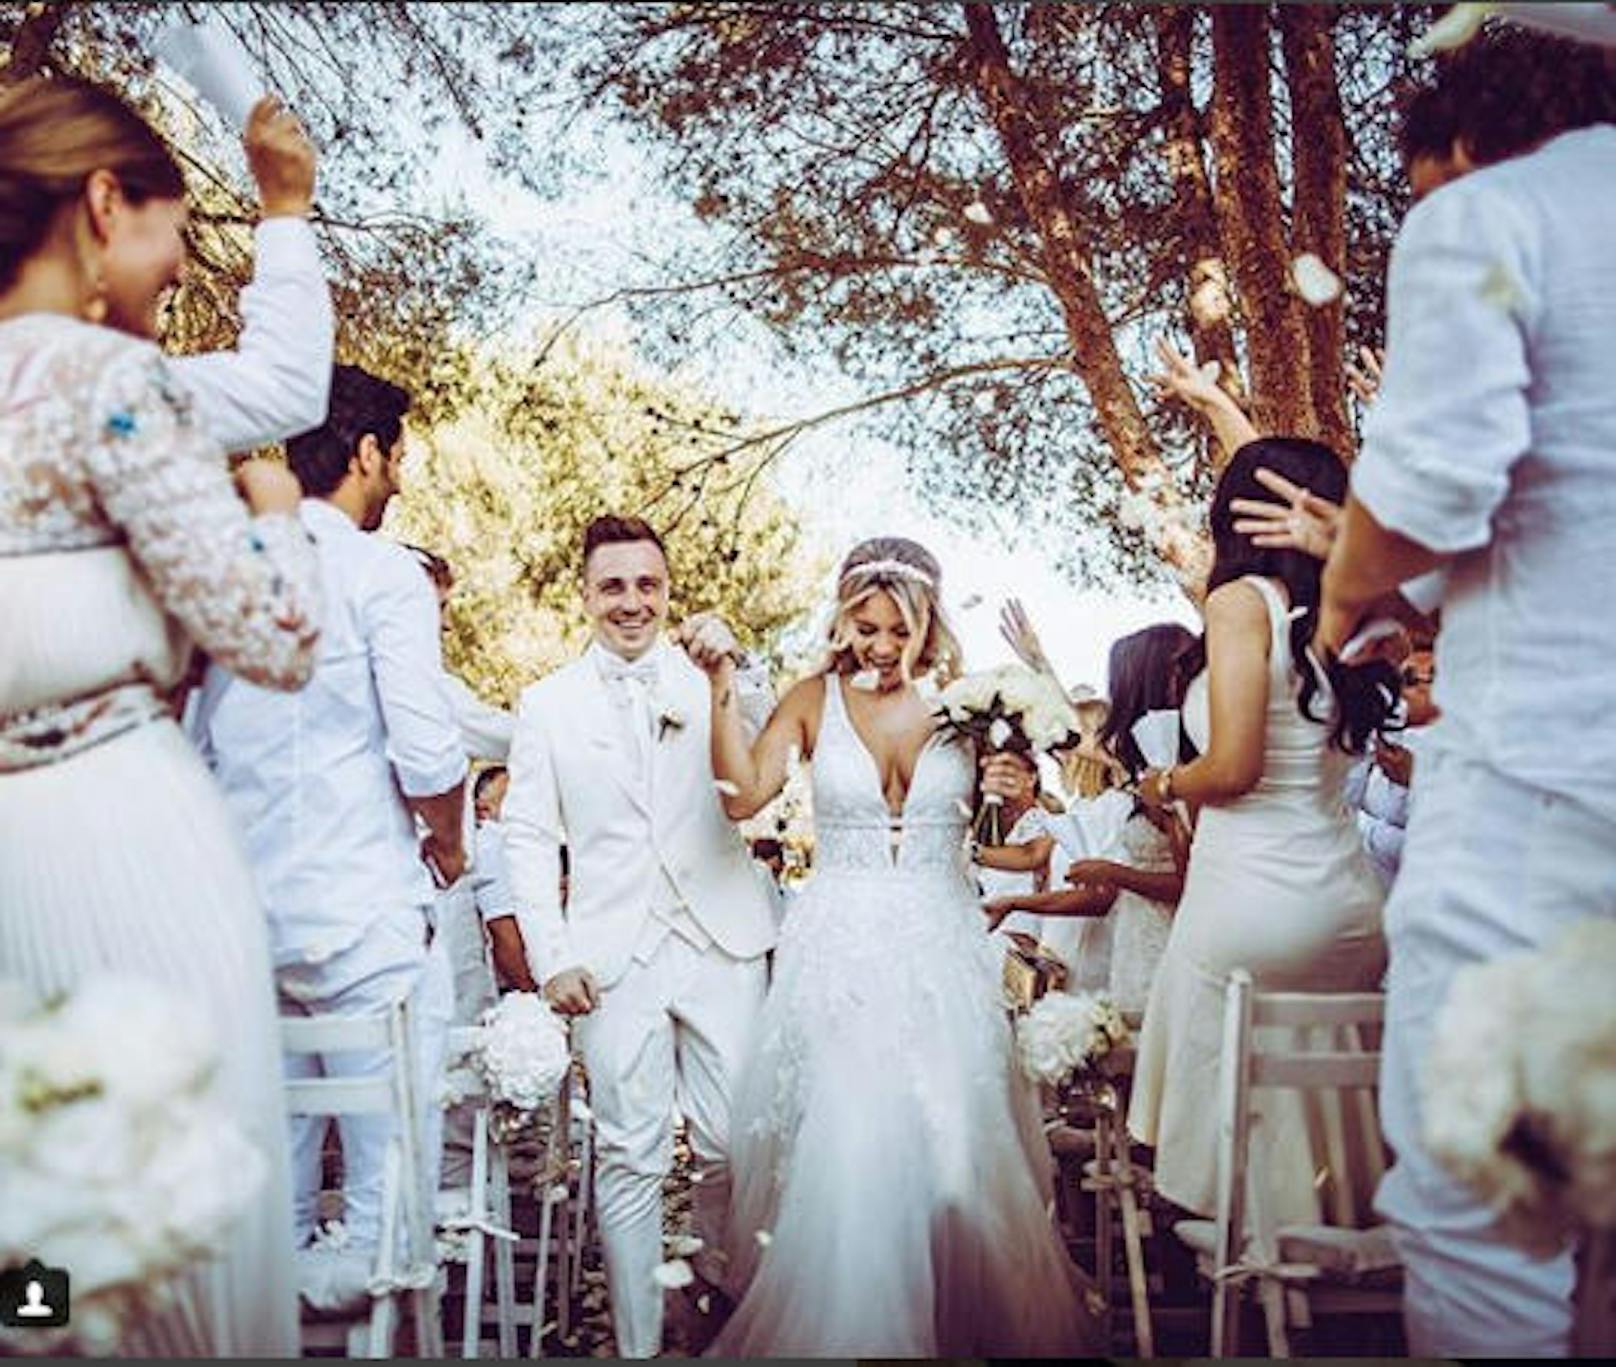 Am 23. Juni auf Ibizia wurde YouTuber-Hochzeit gefeiert. Dagi Bee und ihr Eugen Kazakov machten ihre dreijährige Beziehung rechtlich bindend.